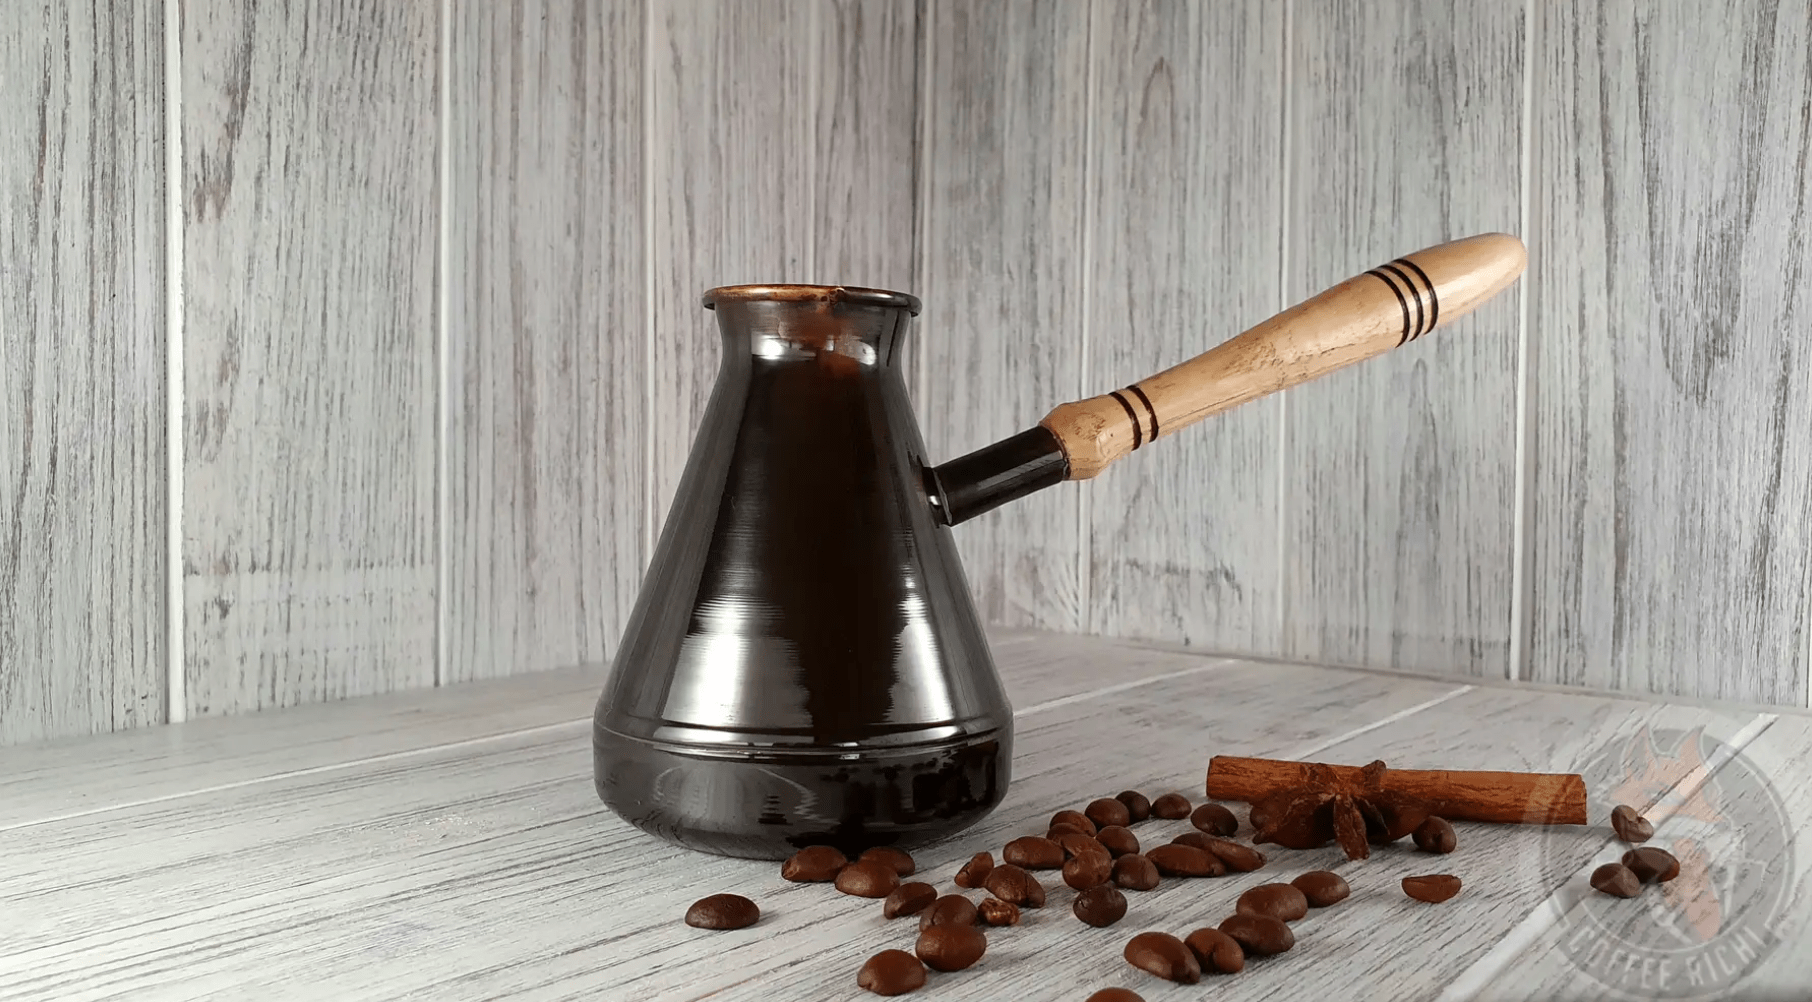 Як вибрати турку і правильно варити в ній каву